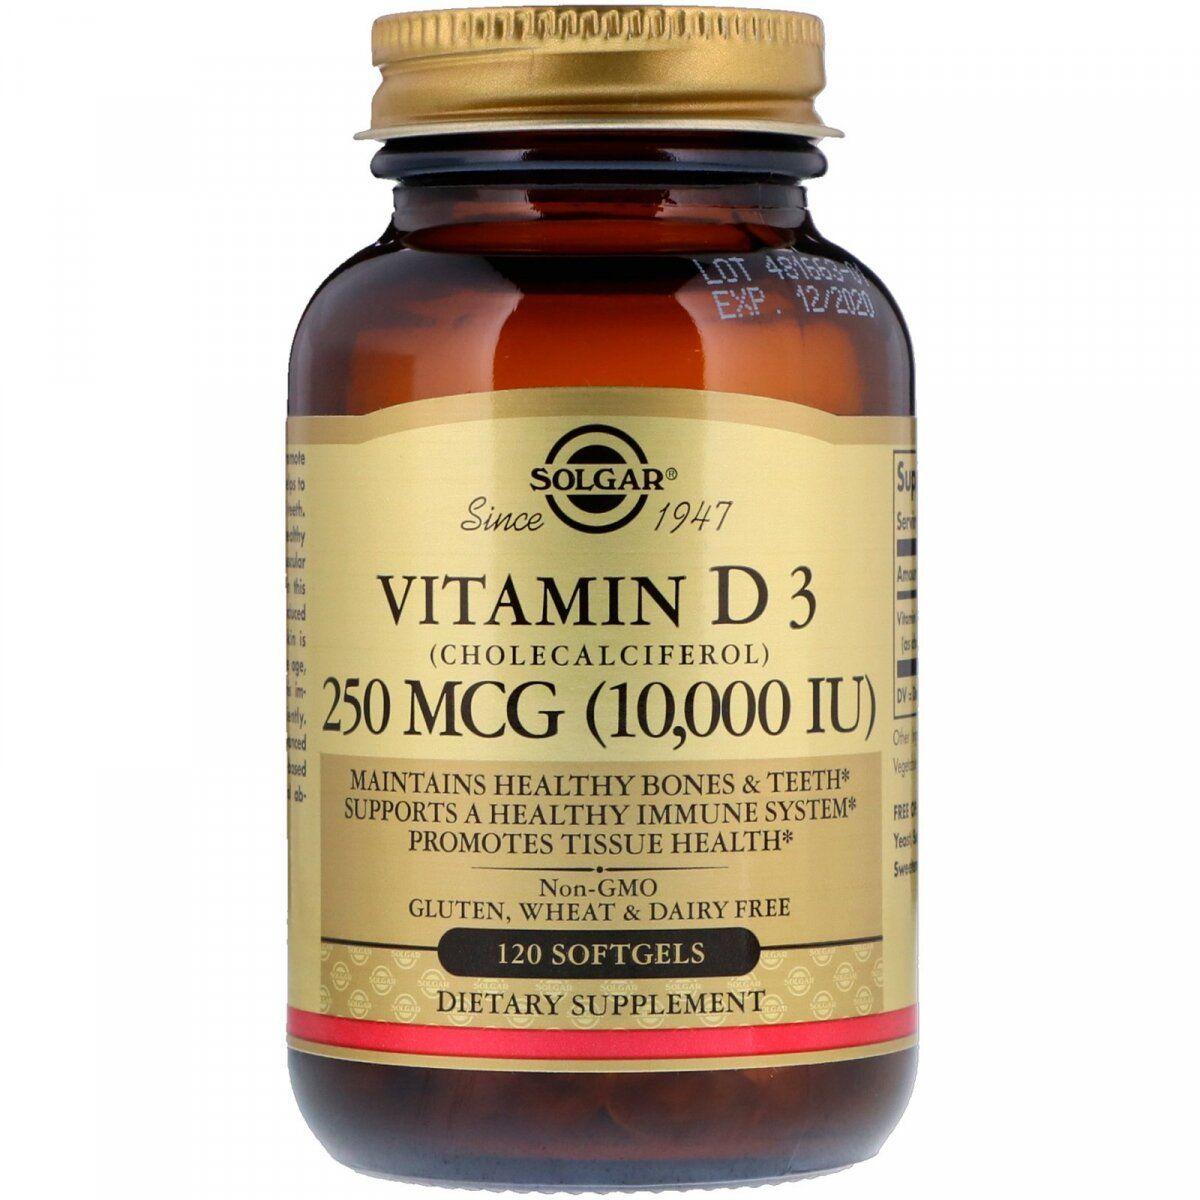 Solgar Vitamin D3 (Cholecalciferol) 250 mcg (10,000 IU) 120 Softgels,  мл, Solgar. Витамины и минералы. Поддержание здоровья Укрепление иммунитета 